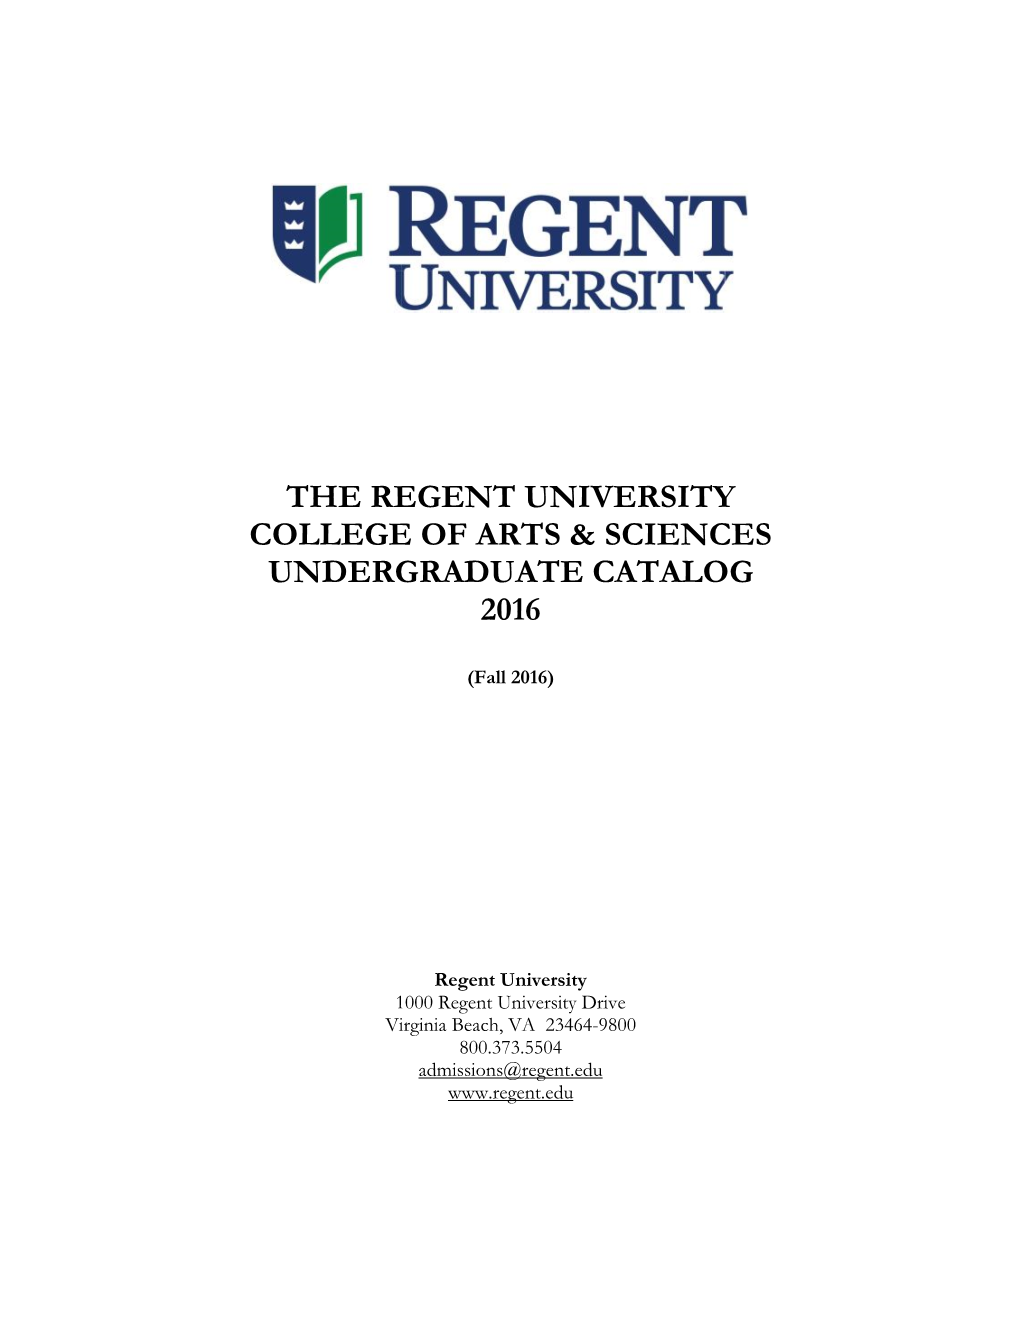 The Regent University College of Arts & Sciences Undergraduate Catalog 2016